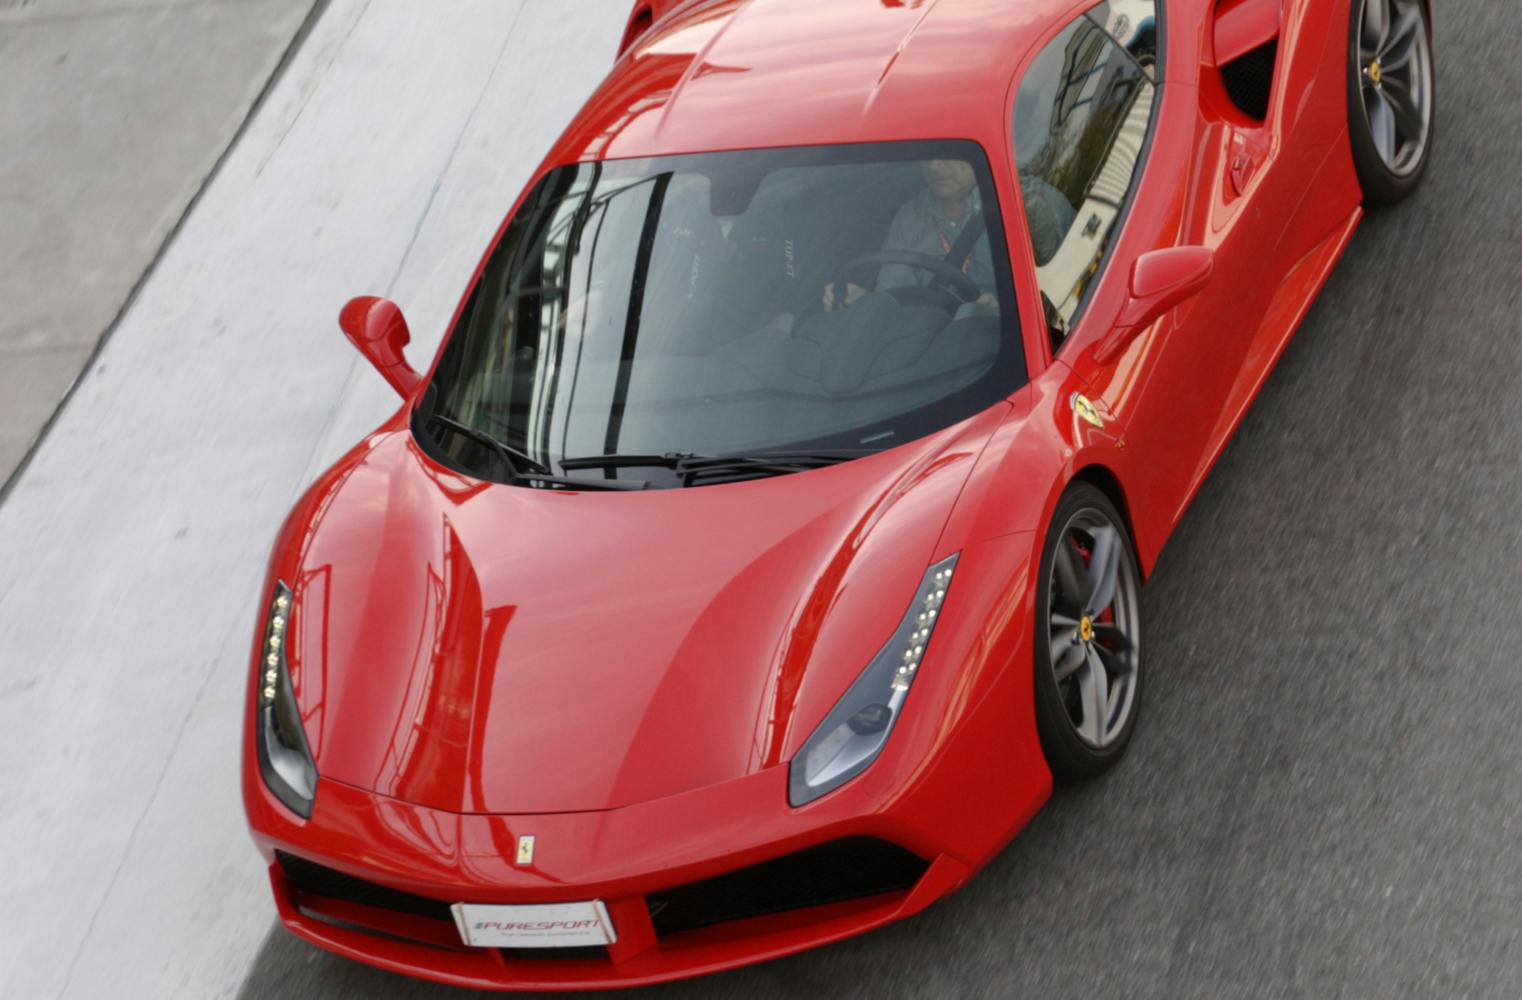 Rennstreckentraining im Ferrari 458 | 2 Runden mit 570 PS